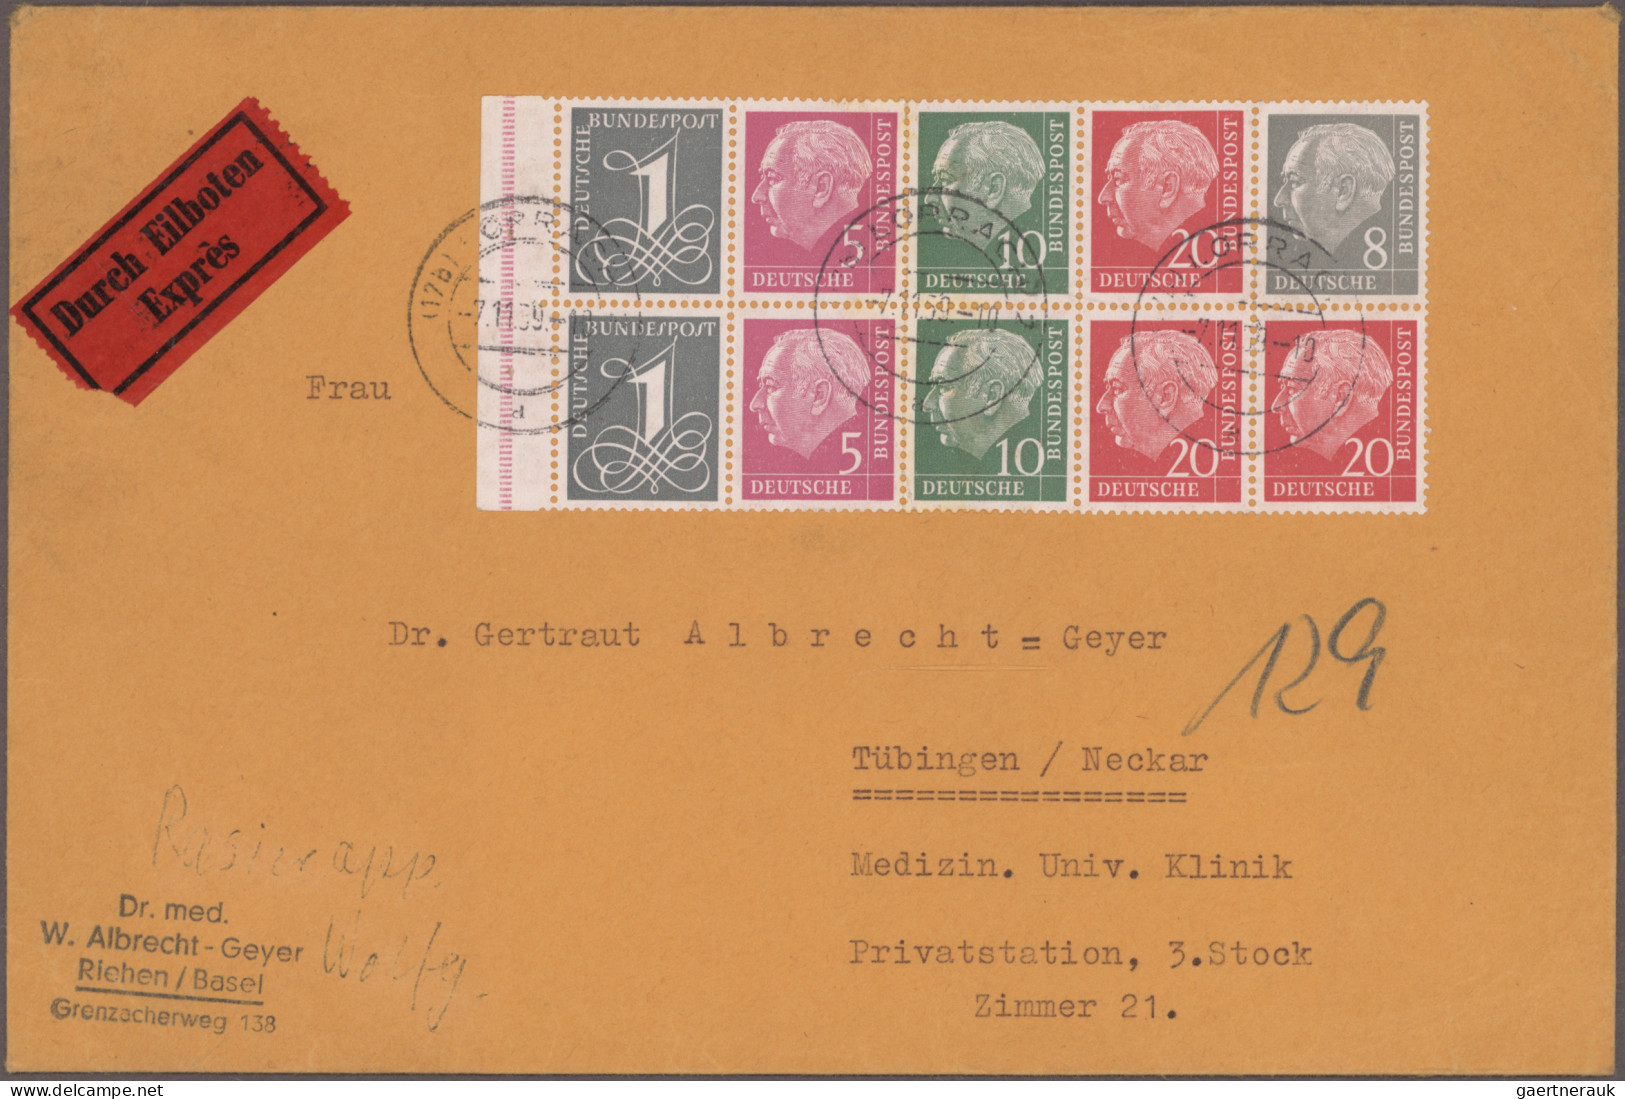 Nachlässe: 1819/1980 ca., Briefe, Ganzsachen und Karten Posten mit einigen hunde